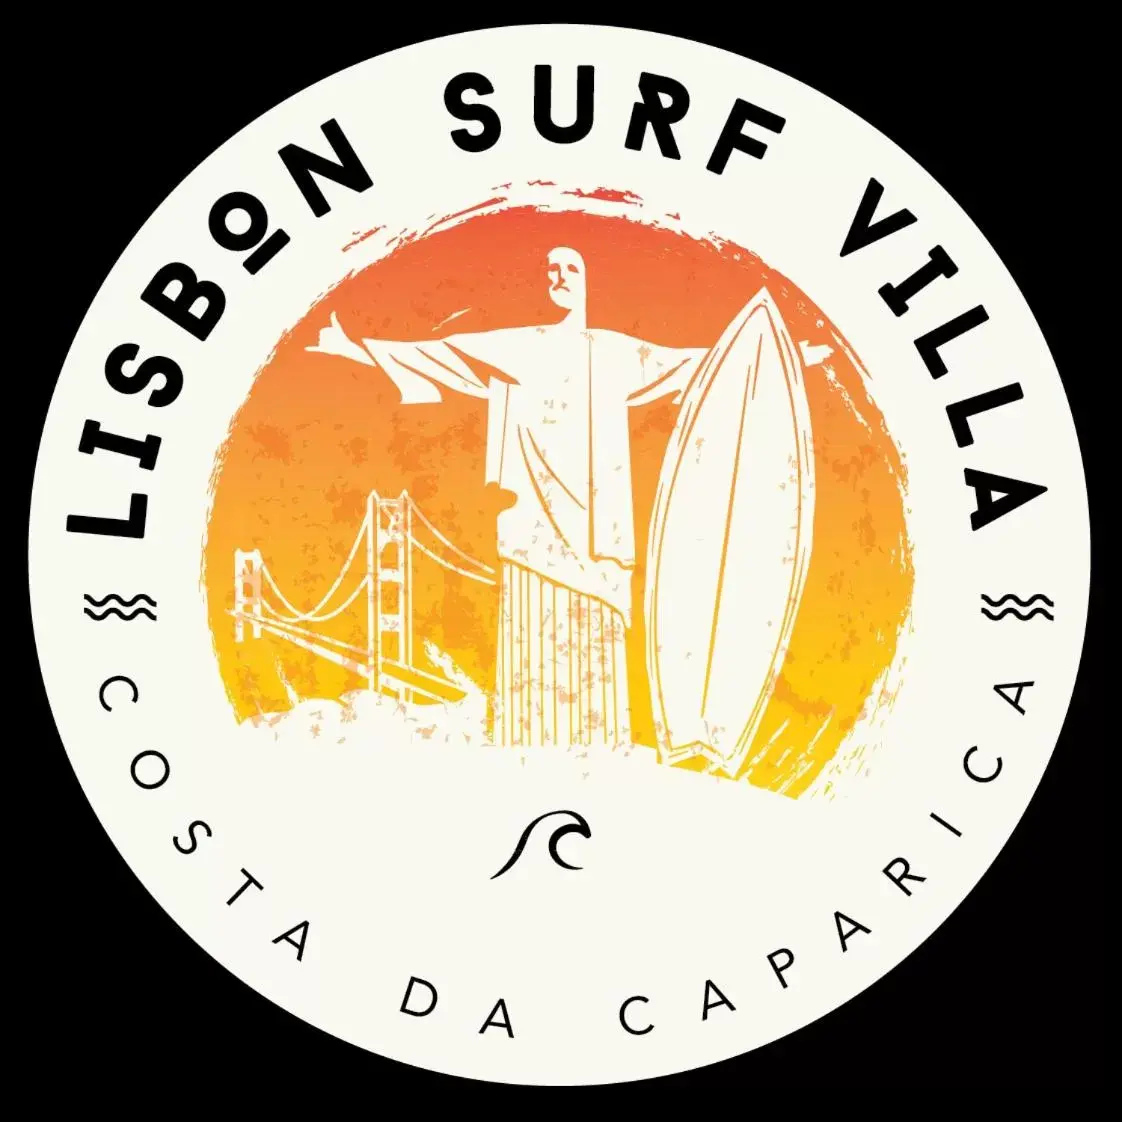 Property logo or sign in Lisbon Surf Villa